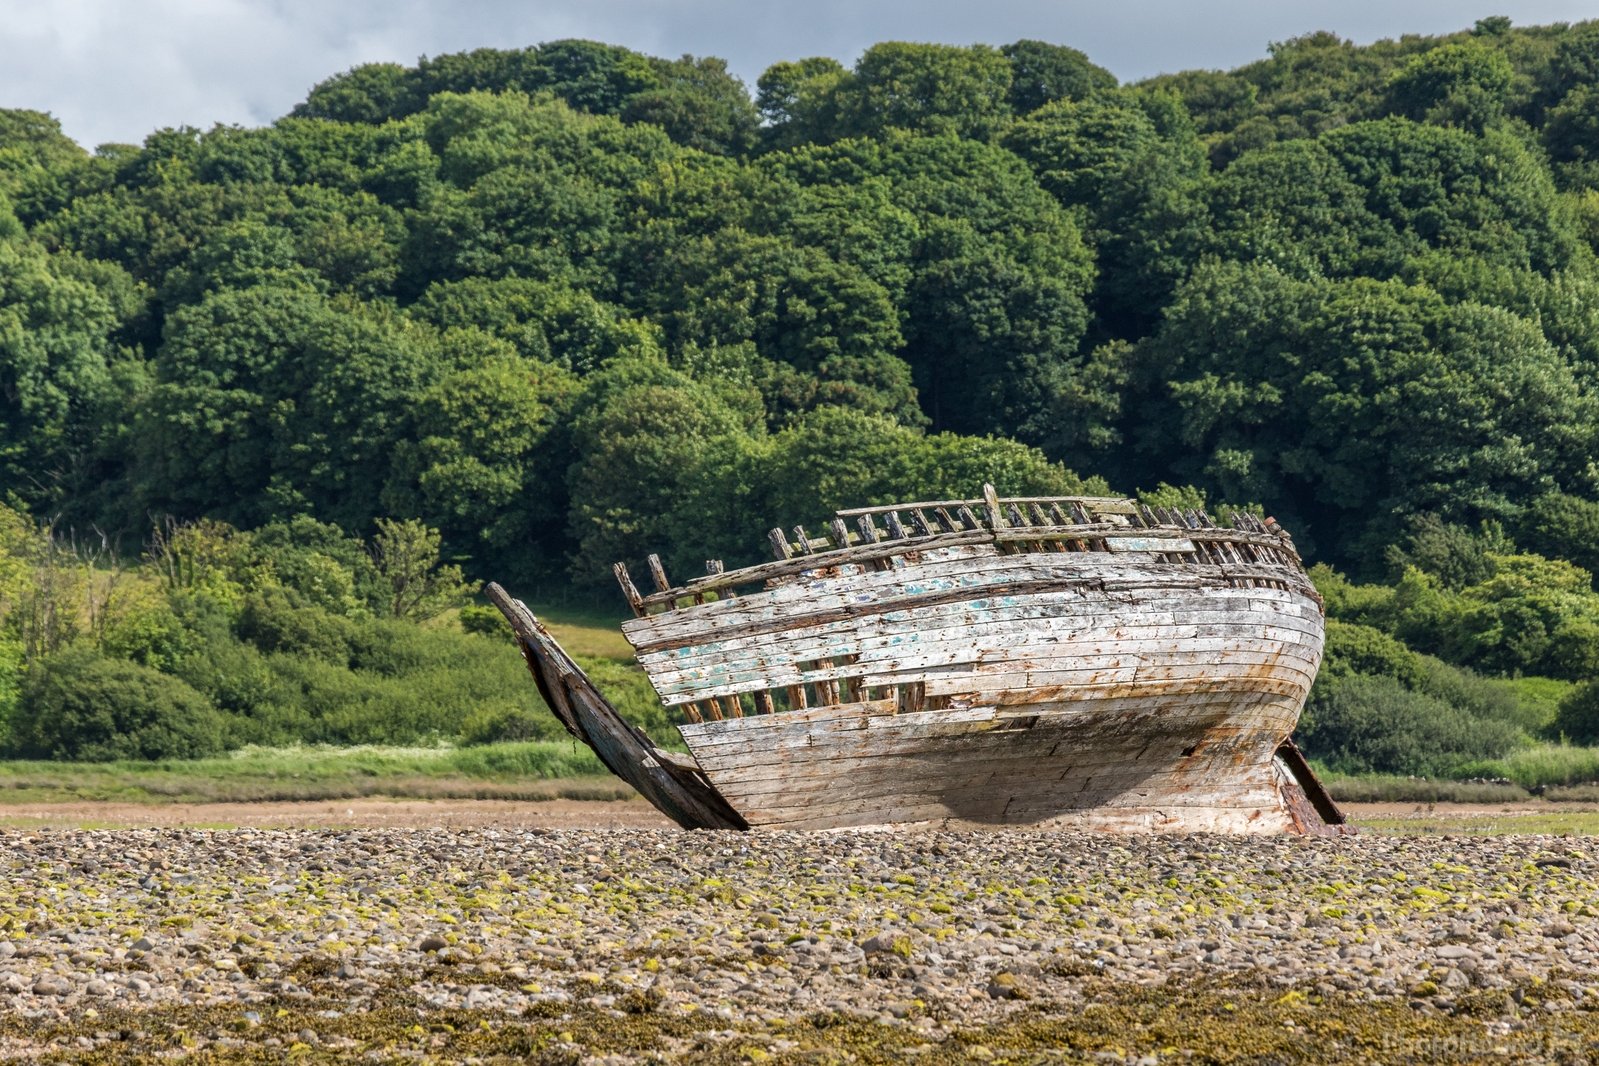 Image of Shipwreck Dulas bay by Andy Killingbeck